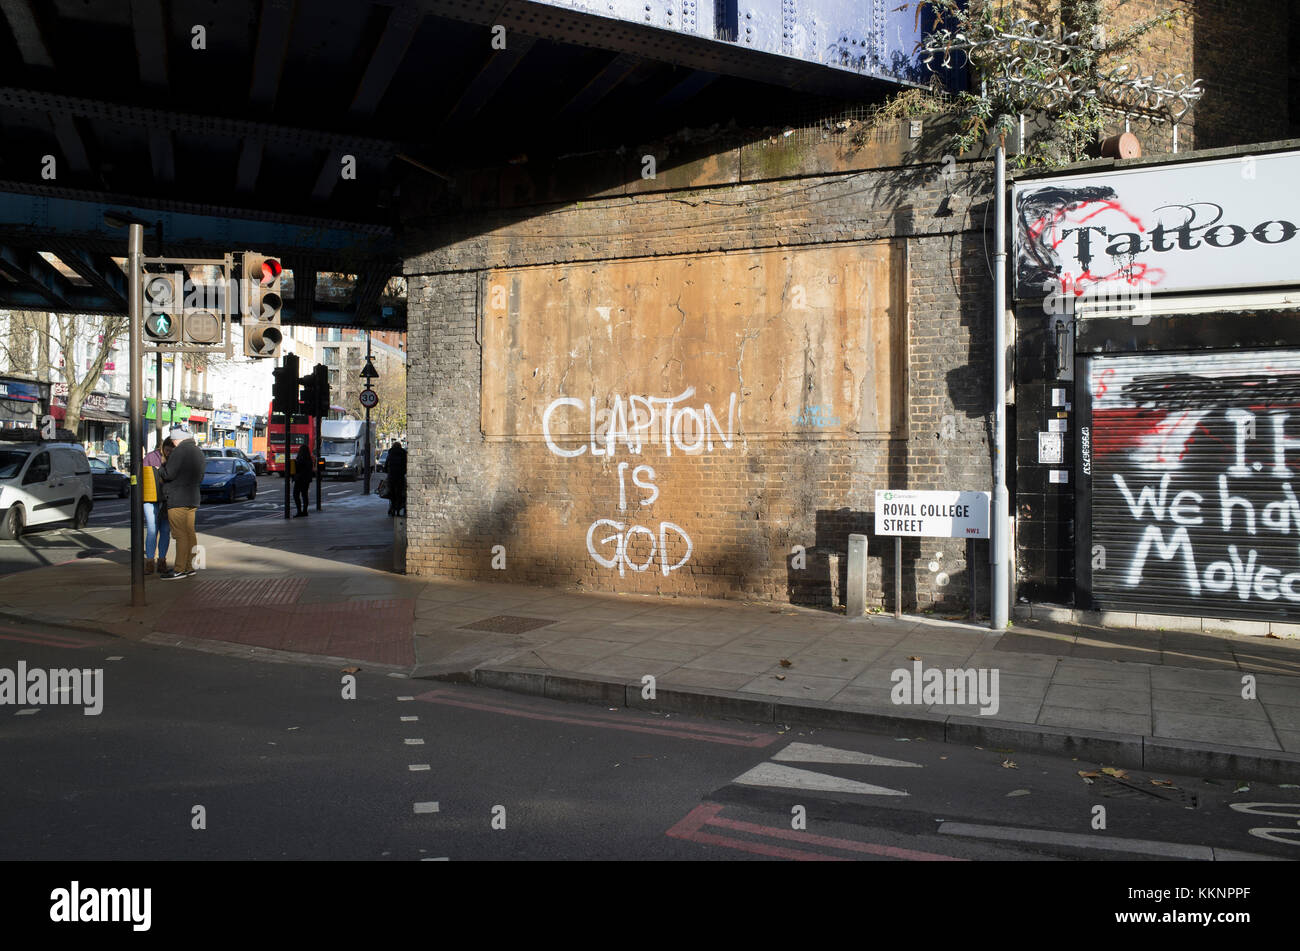 Camden Town, Londres, Angleterre, 1er décembre 2017, Clapton est Dieu de l'écriture Graffiti apparaît, une copie de l'icône de la campagne des années 1960 Banque D'Images